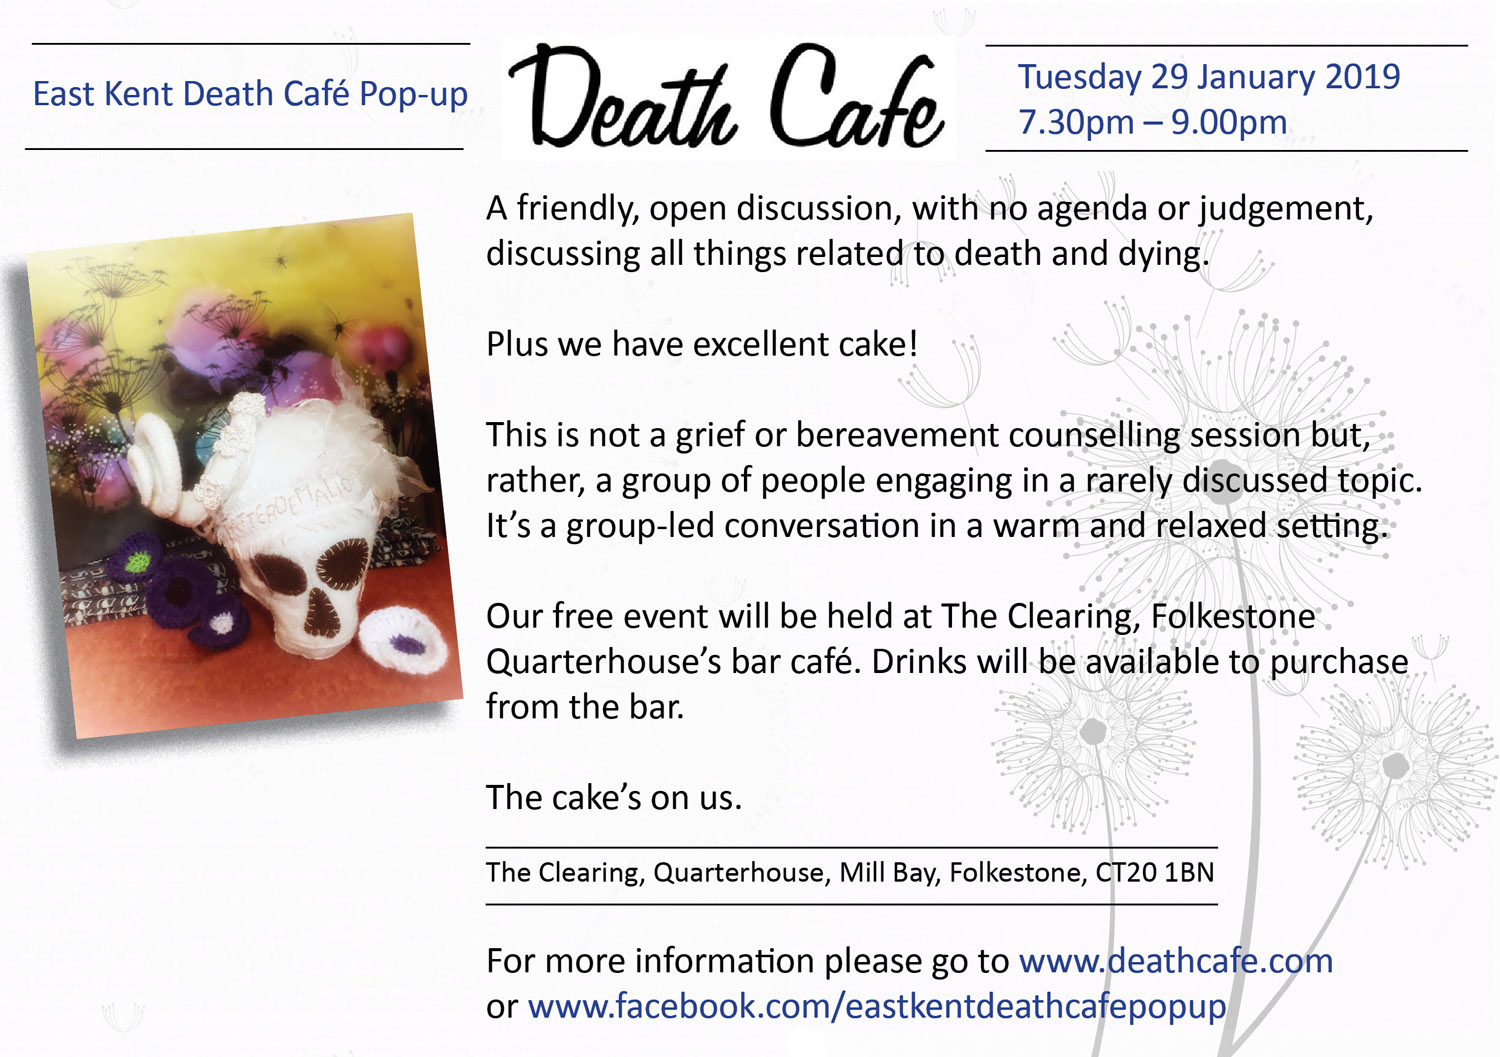 East Kent Death Cafe Pop Up